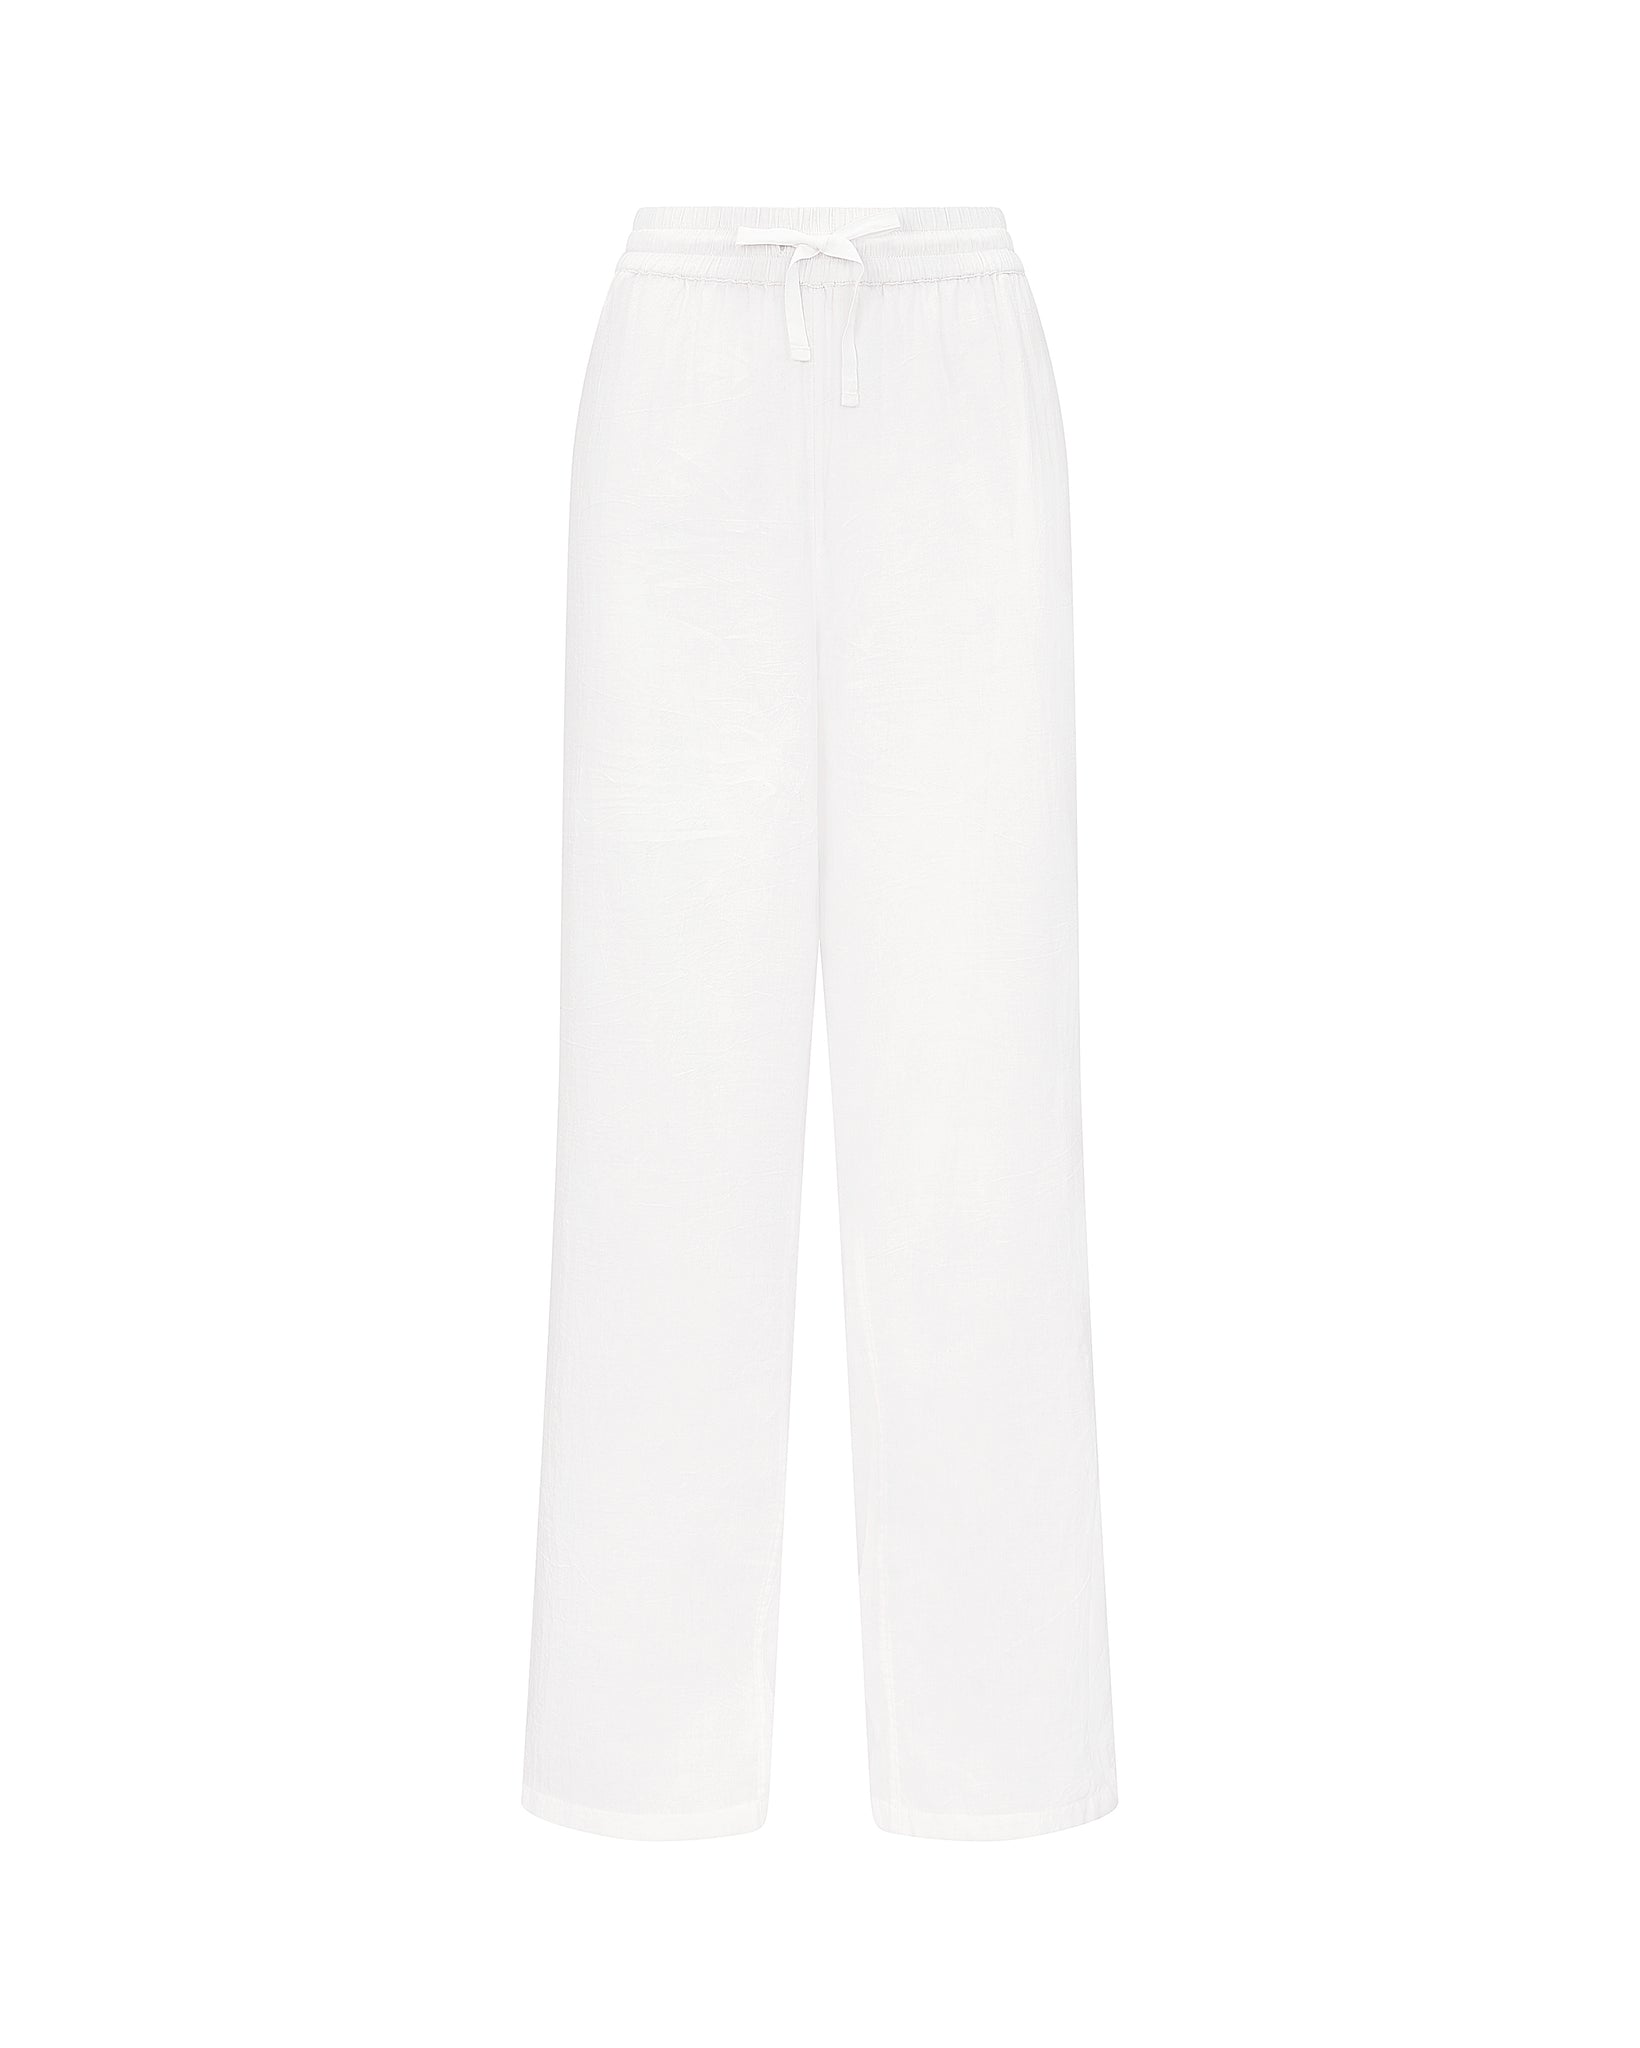 The Classic Trouser - Cotton White